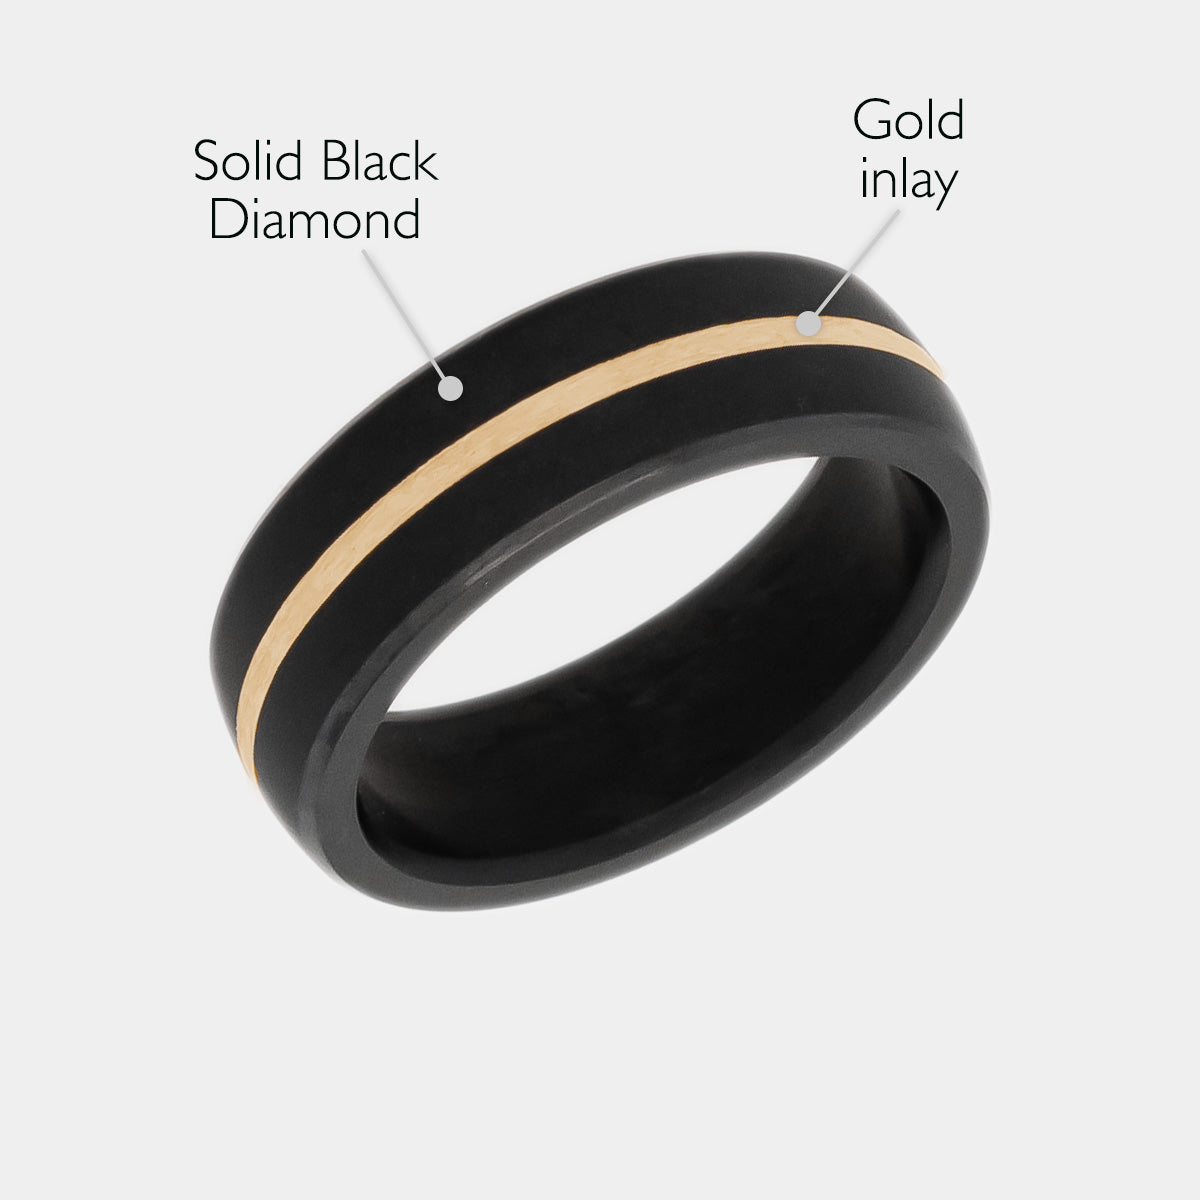 99% 24K Men Gold Bend Ring at best price in Mumbai | ID: 2852855458191